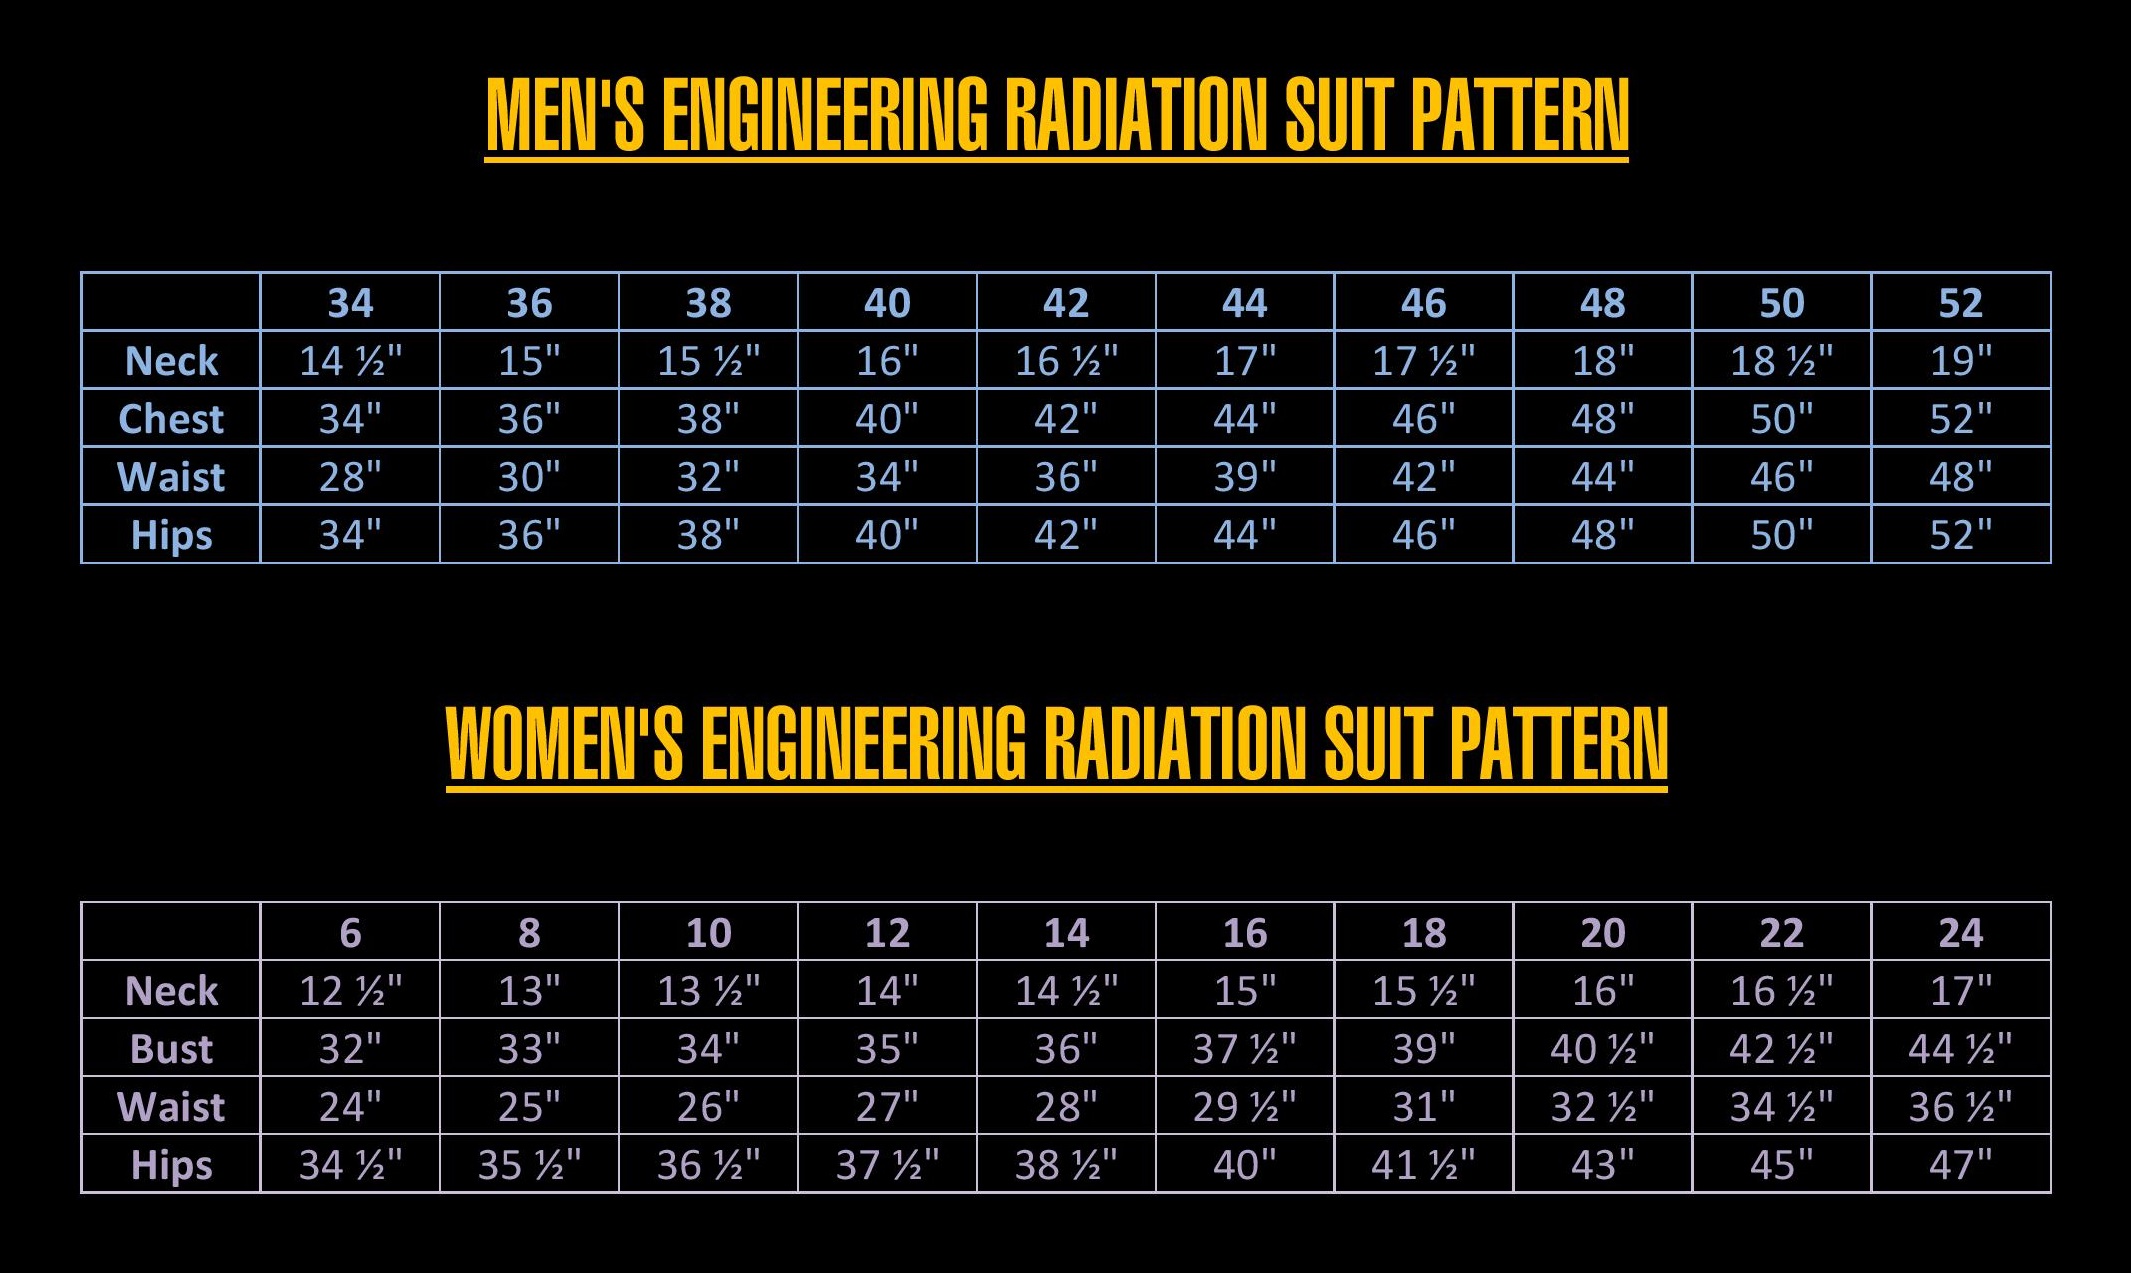 Engineering radiation suit tutorial - Star Trek Costume Guide